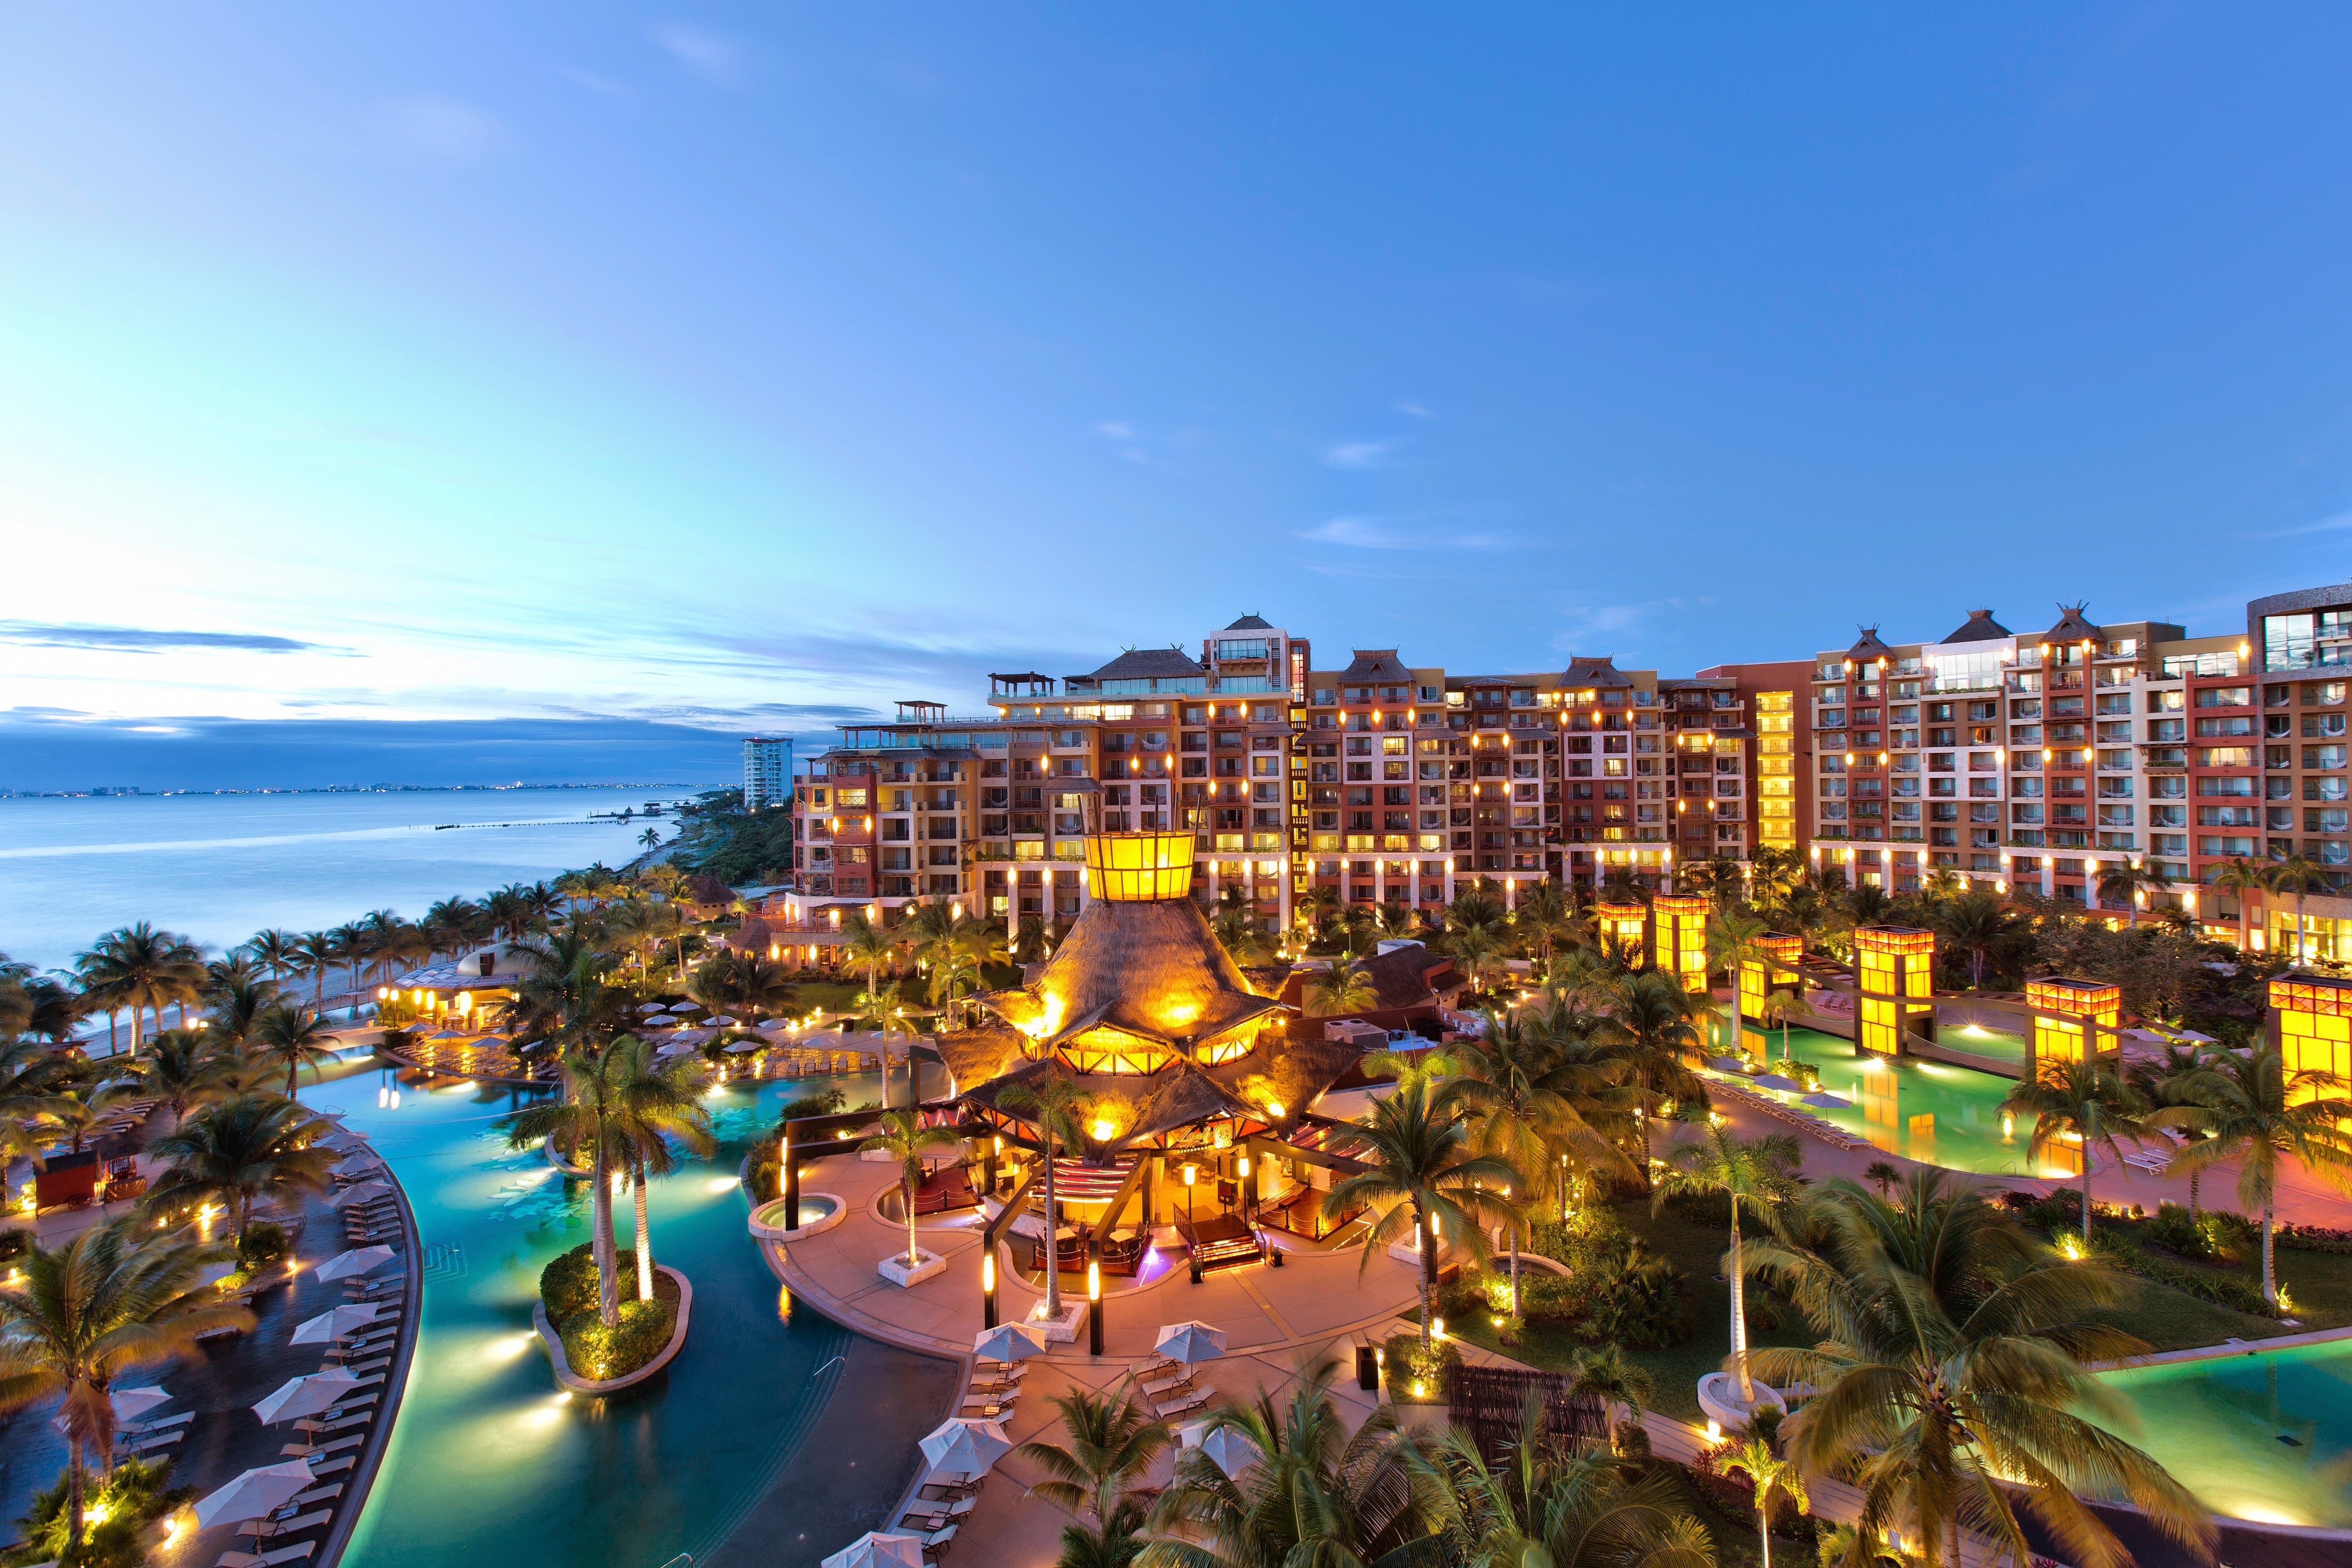 Villa del Palmar Cancun Timeshare for 2017